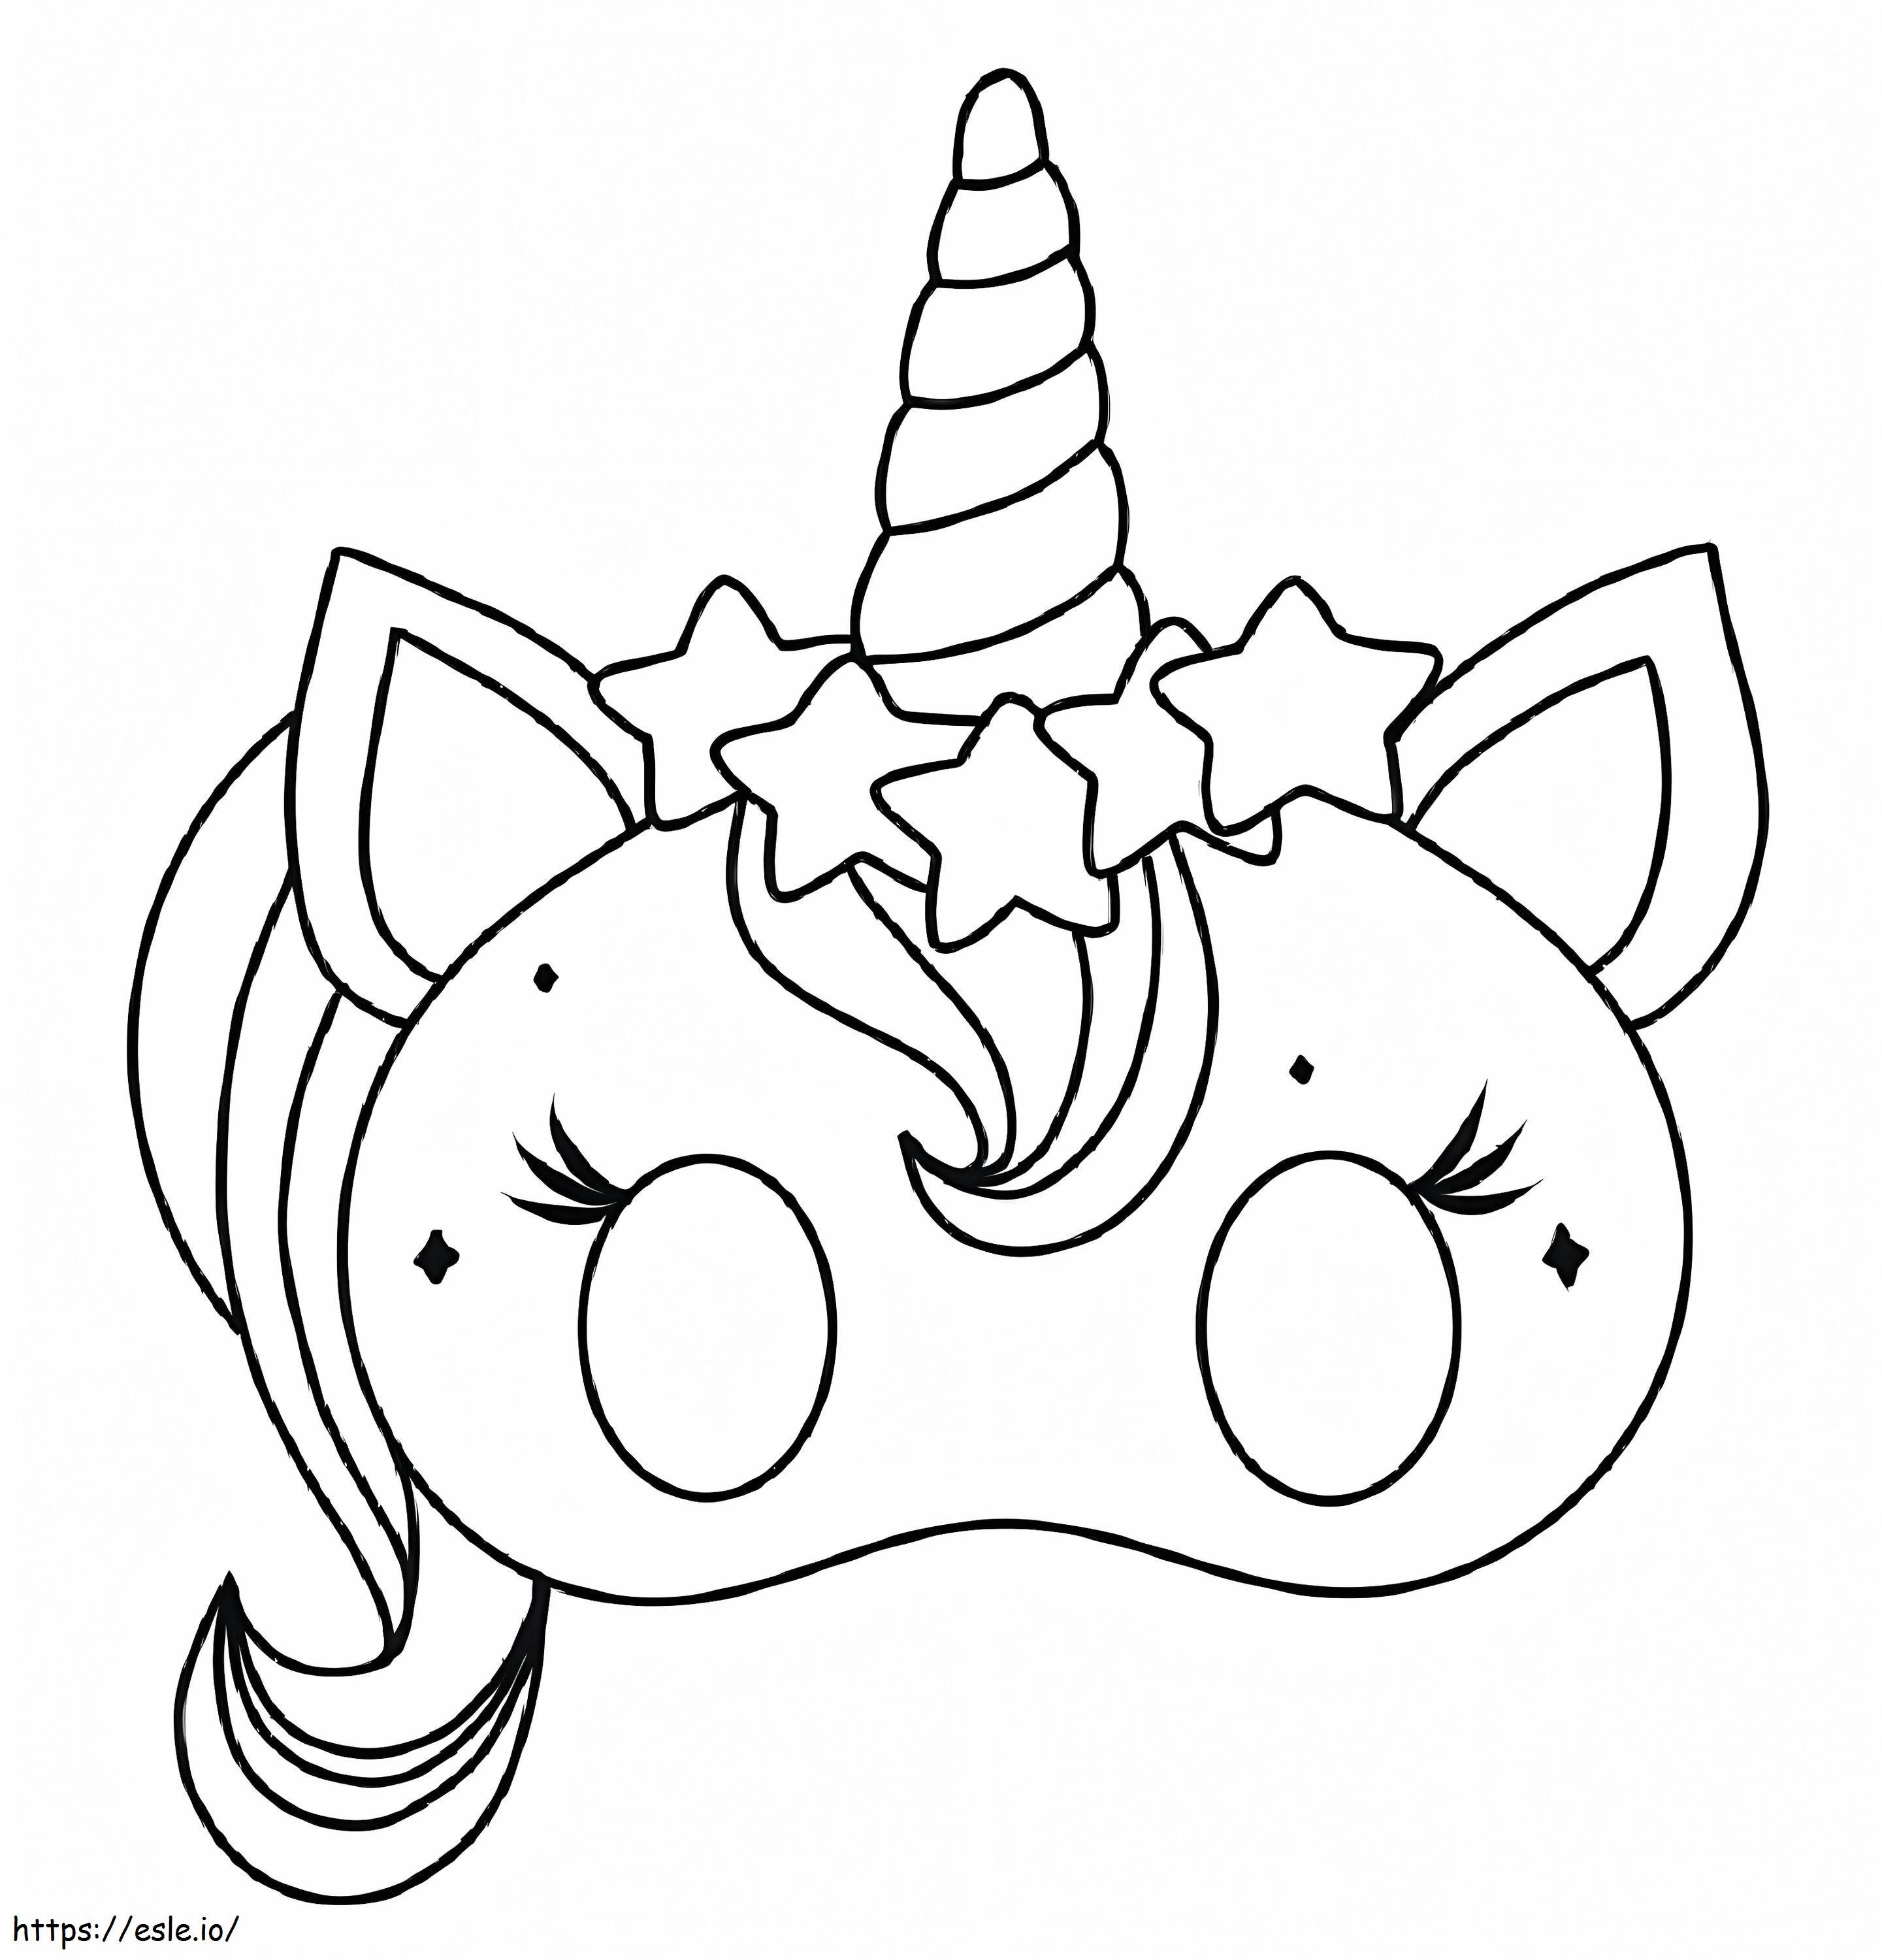 Maska kota jednorożca kolorowanka